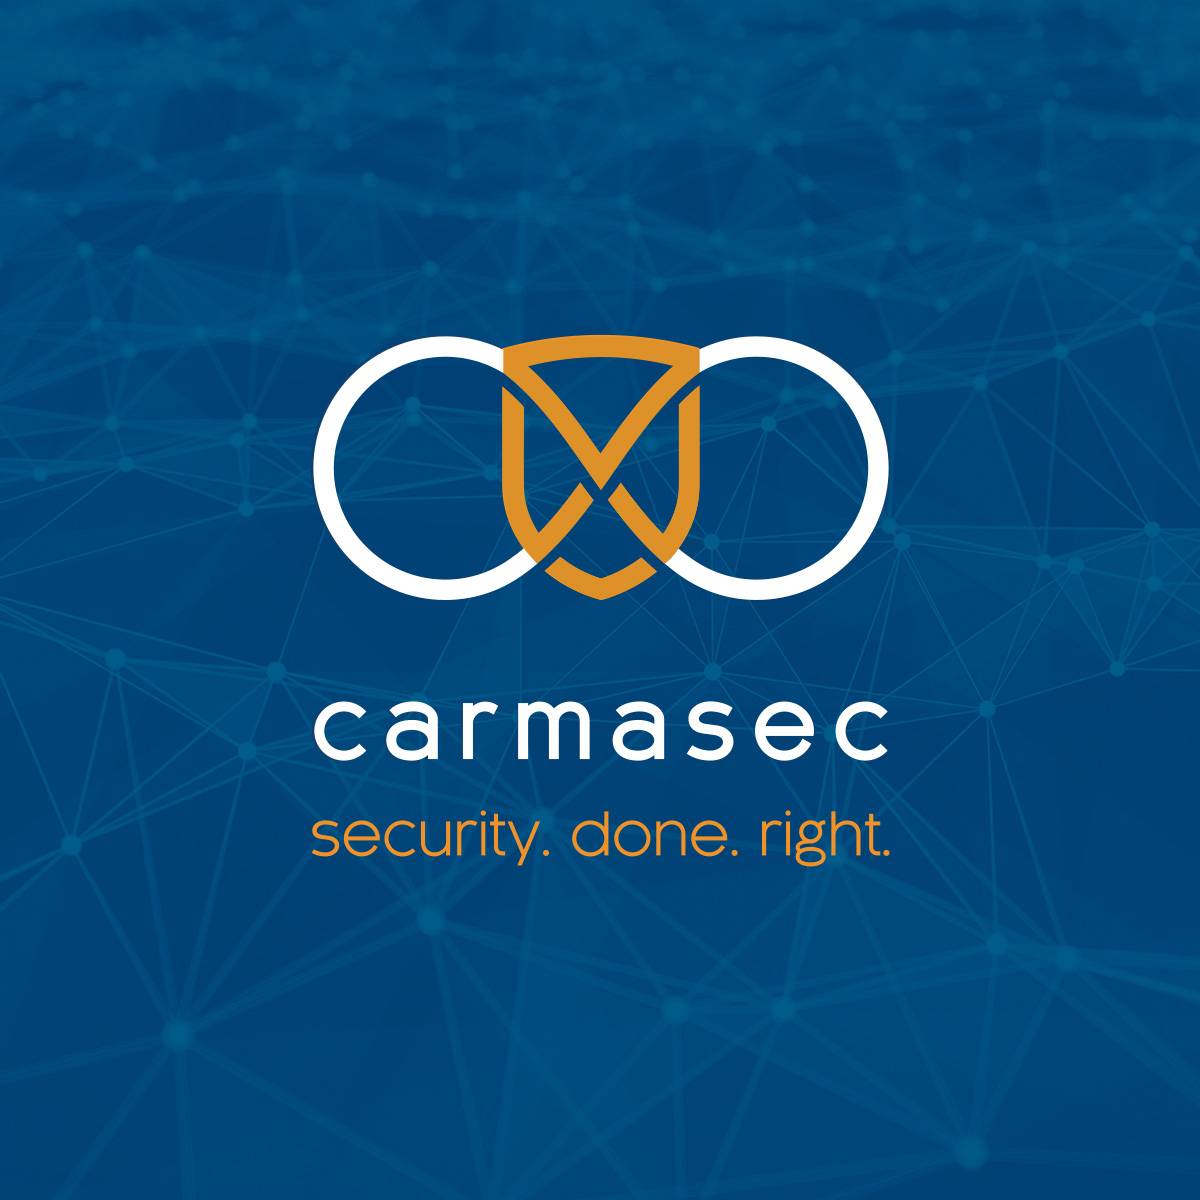 (c) Carmasec.com